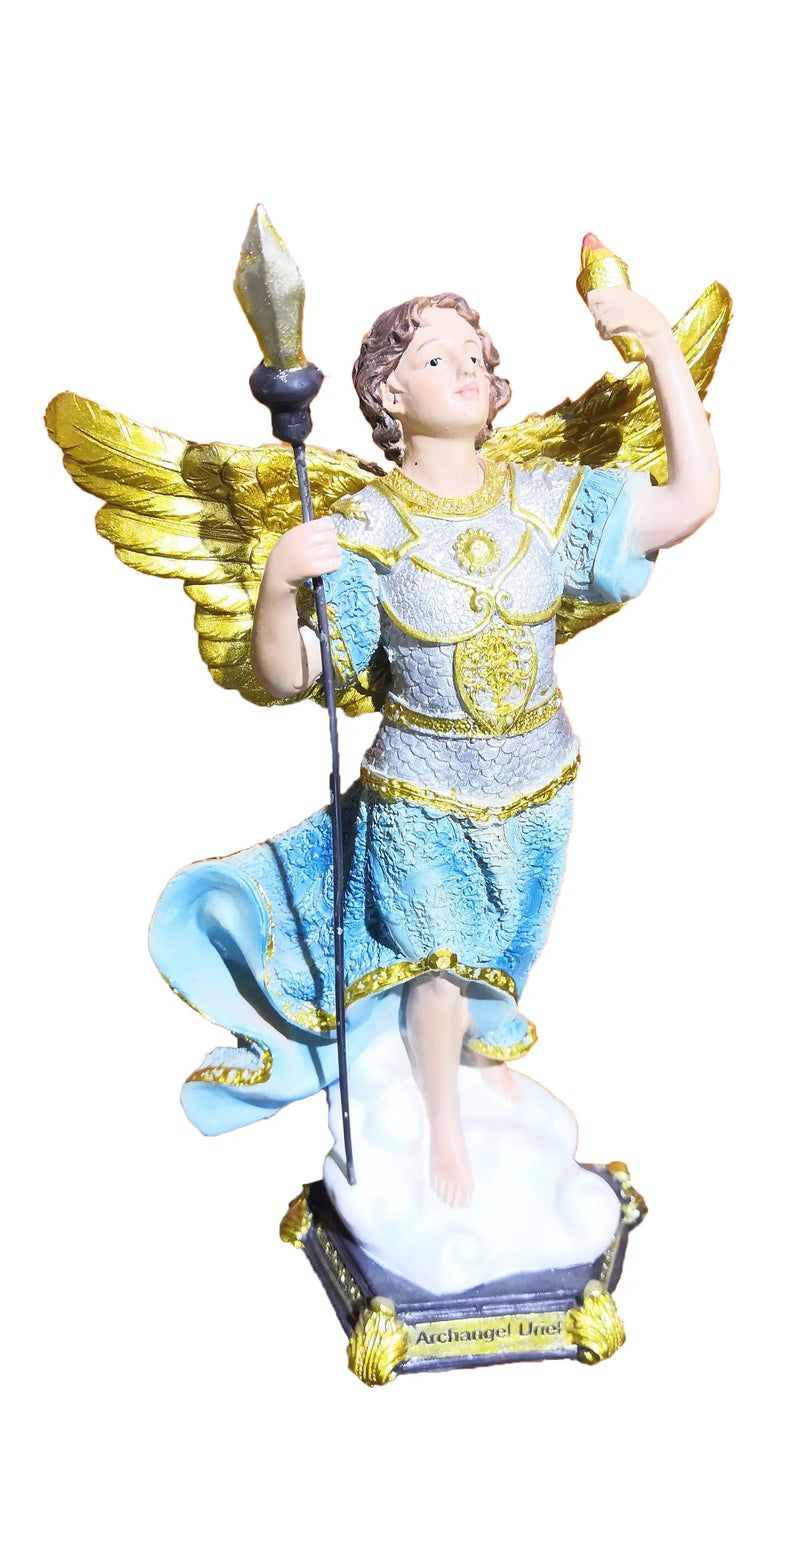 Archangel Uriel 12 inch